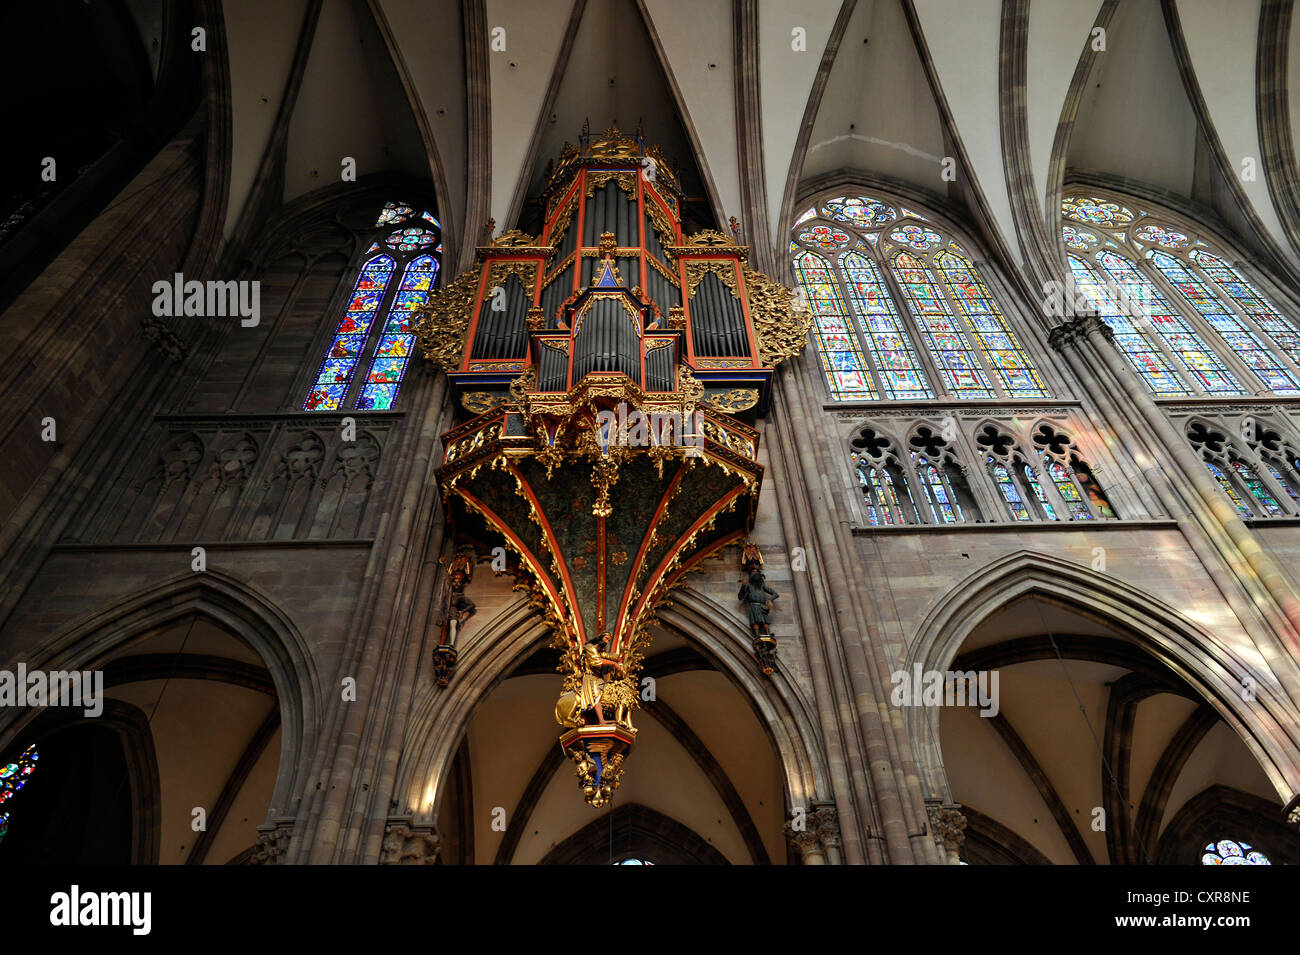 Orgue dans la nef, avec son boîtier gothique préservé, nef, vue de l'intérieur, la cathédrale de Strasbourg, la cathédrale de Notre Dame de Banque D'Images